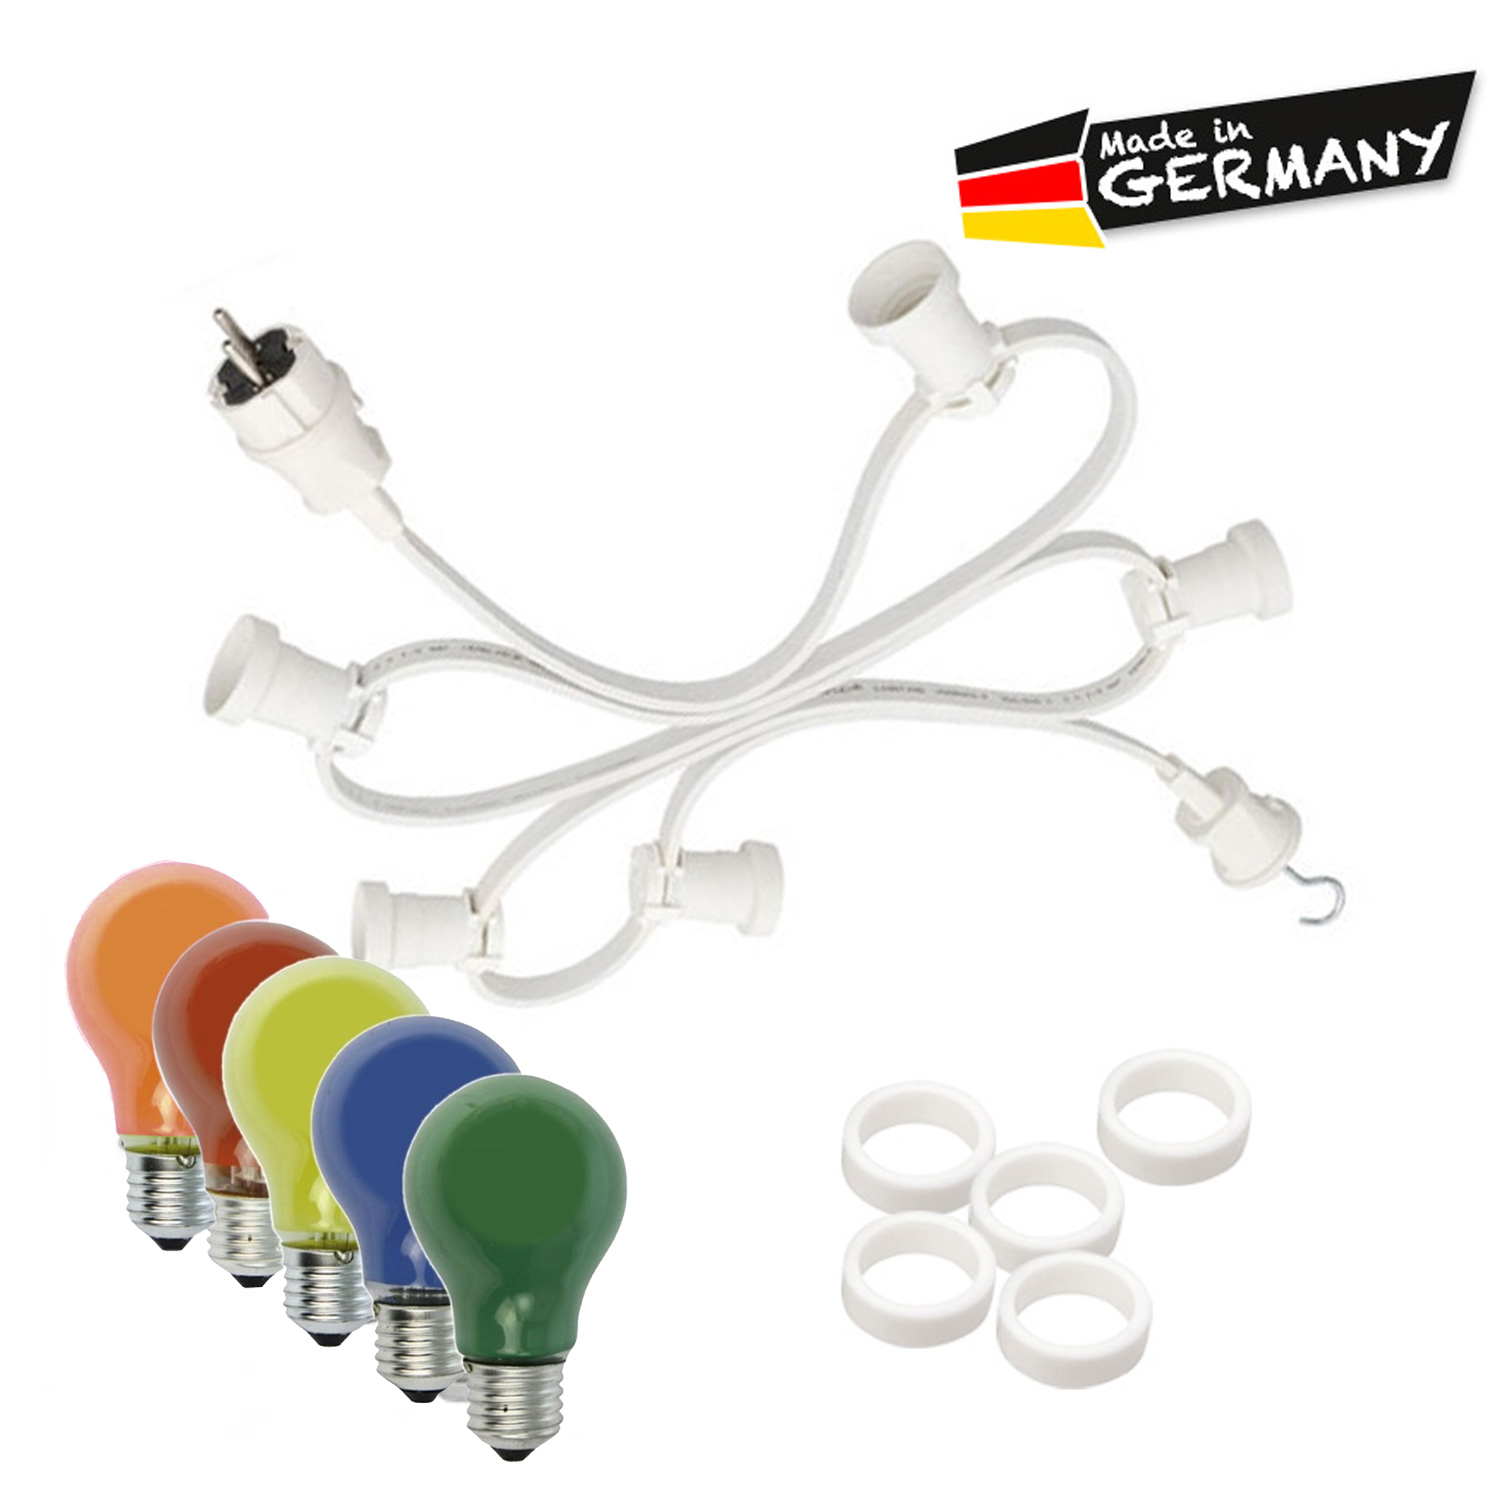 Illu-/Partylichterkette 5m - Außenlichterkette weiß - Made in Germany - 10 x bunte 25W Glühlampen